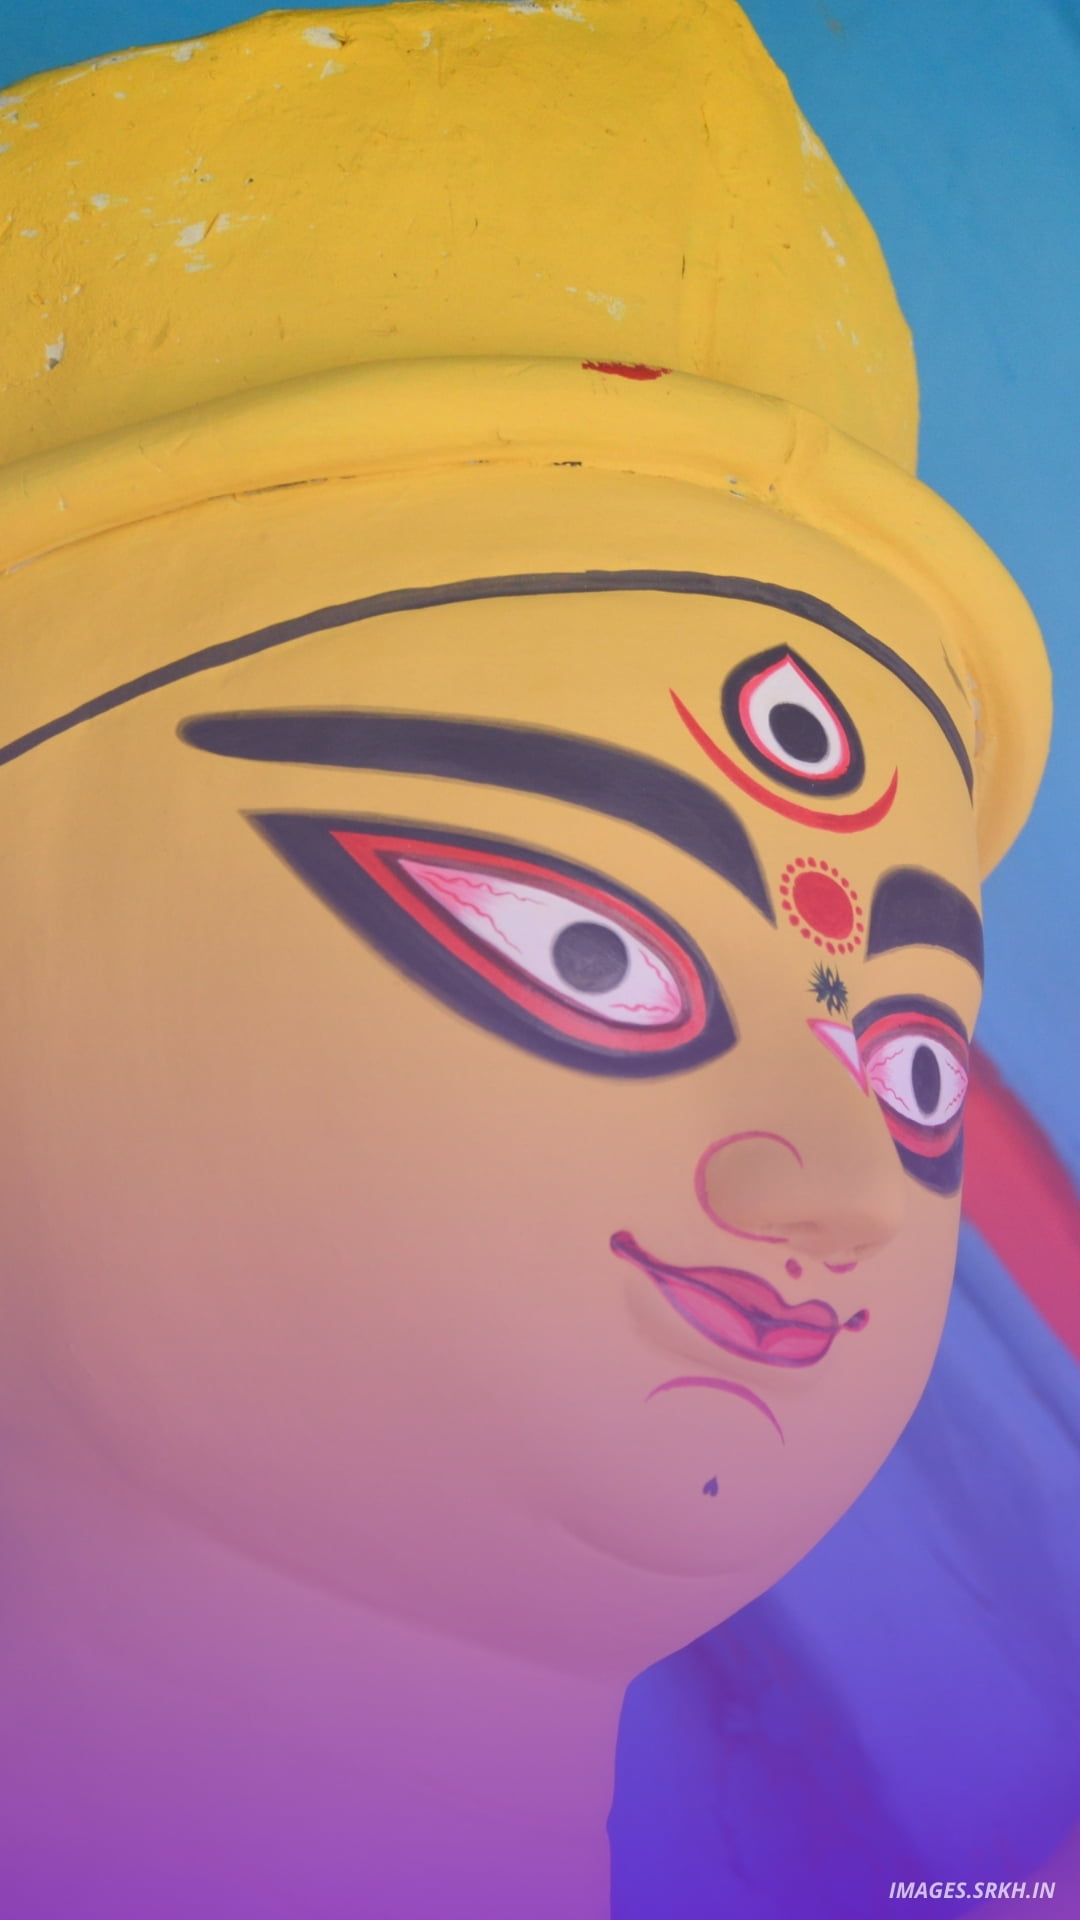 🔥 Durga Puja Background Download free - Images SRkh